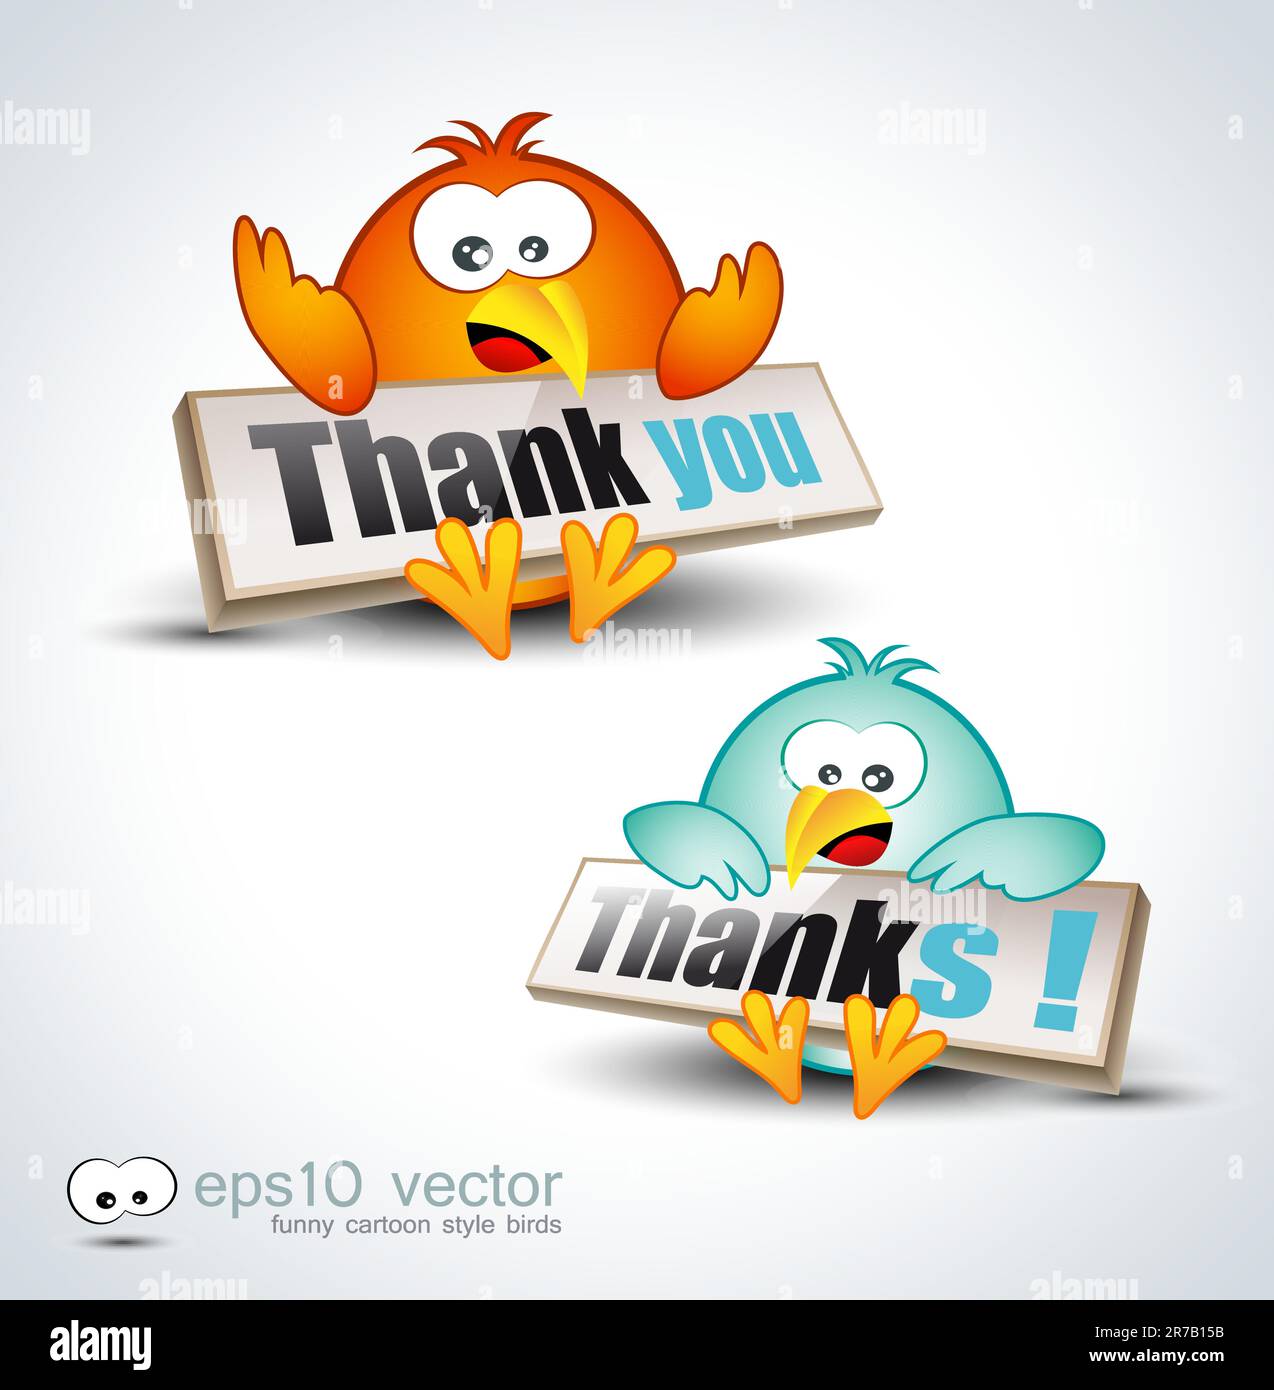 Funny Cartoon Birds 3D icon to say 'Thank you' Stock Vector